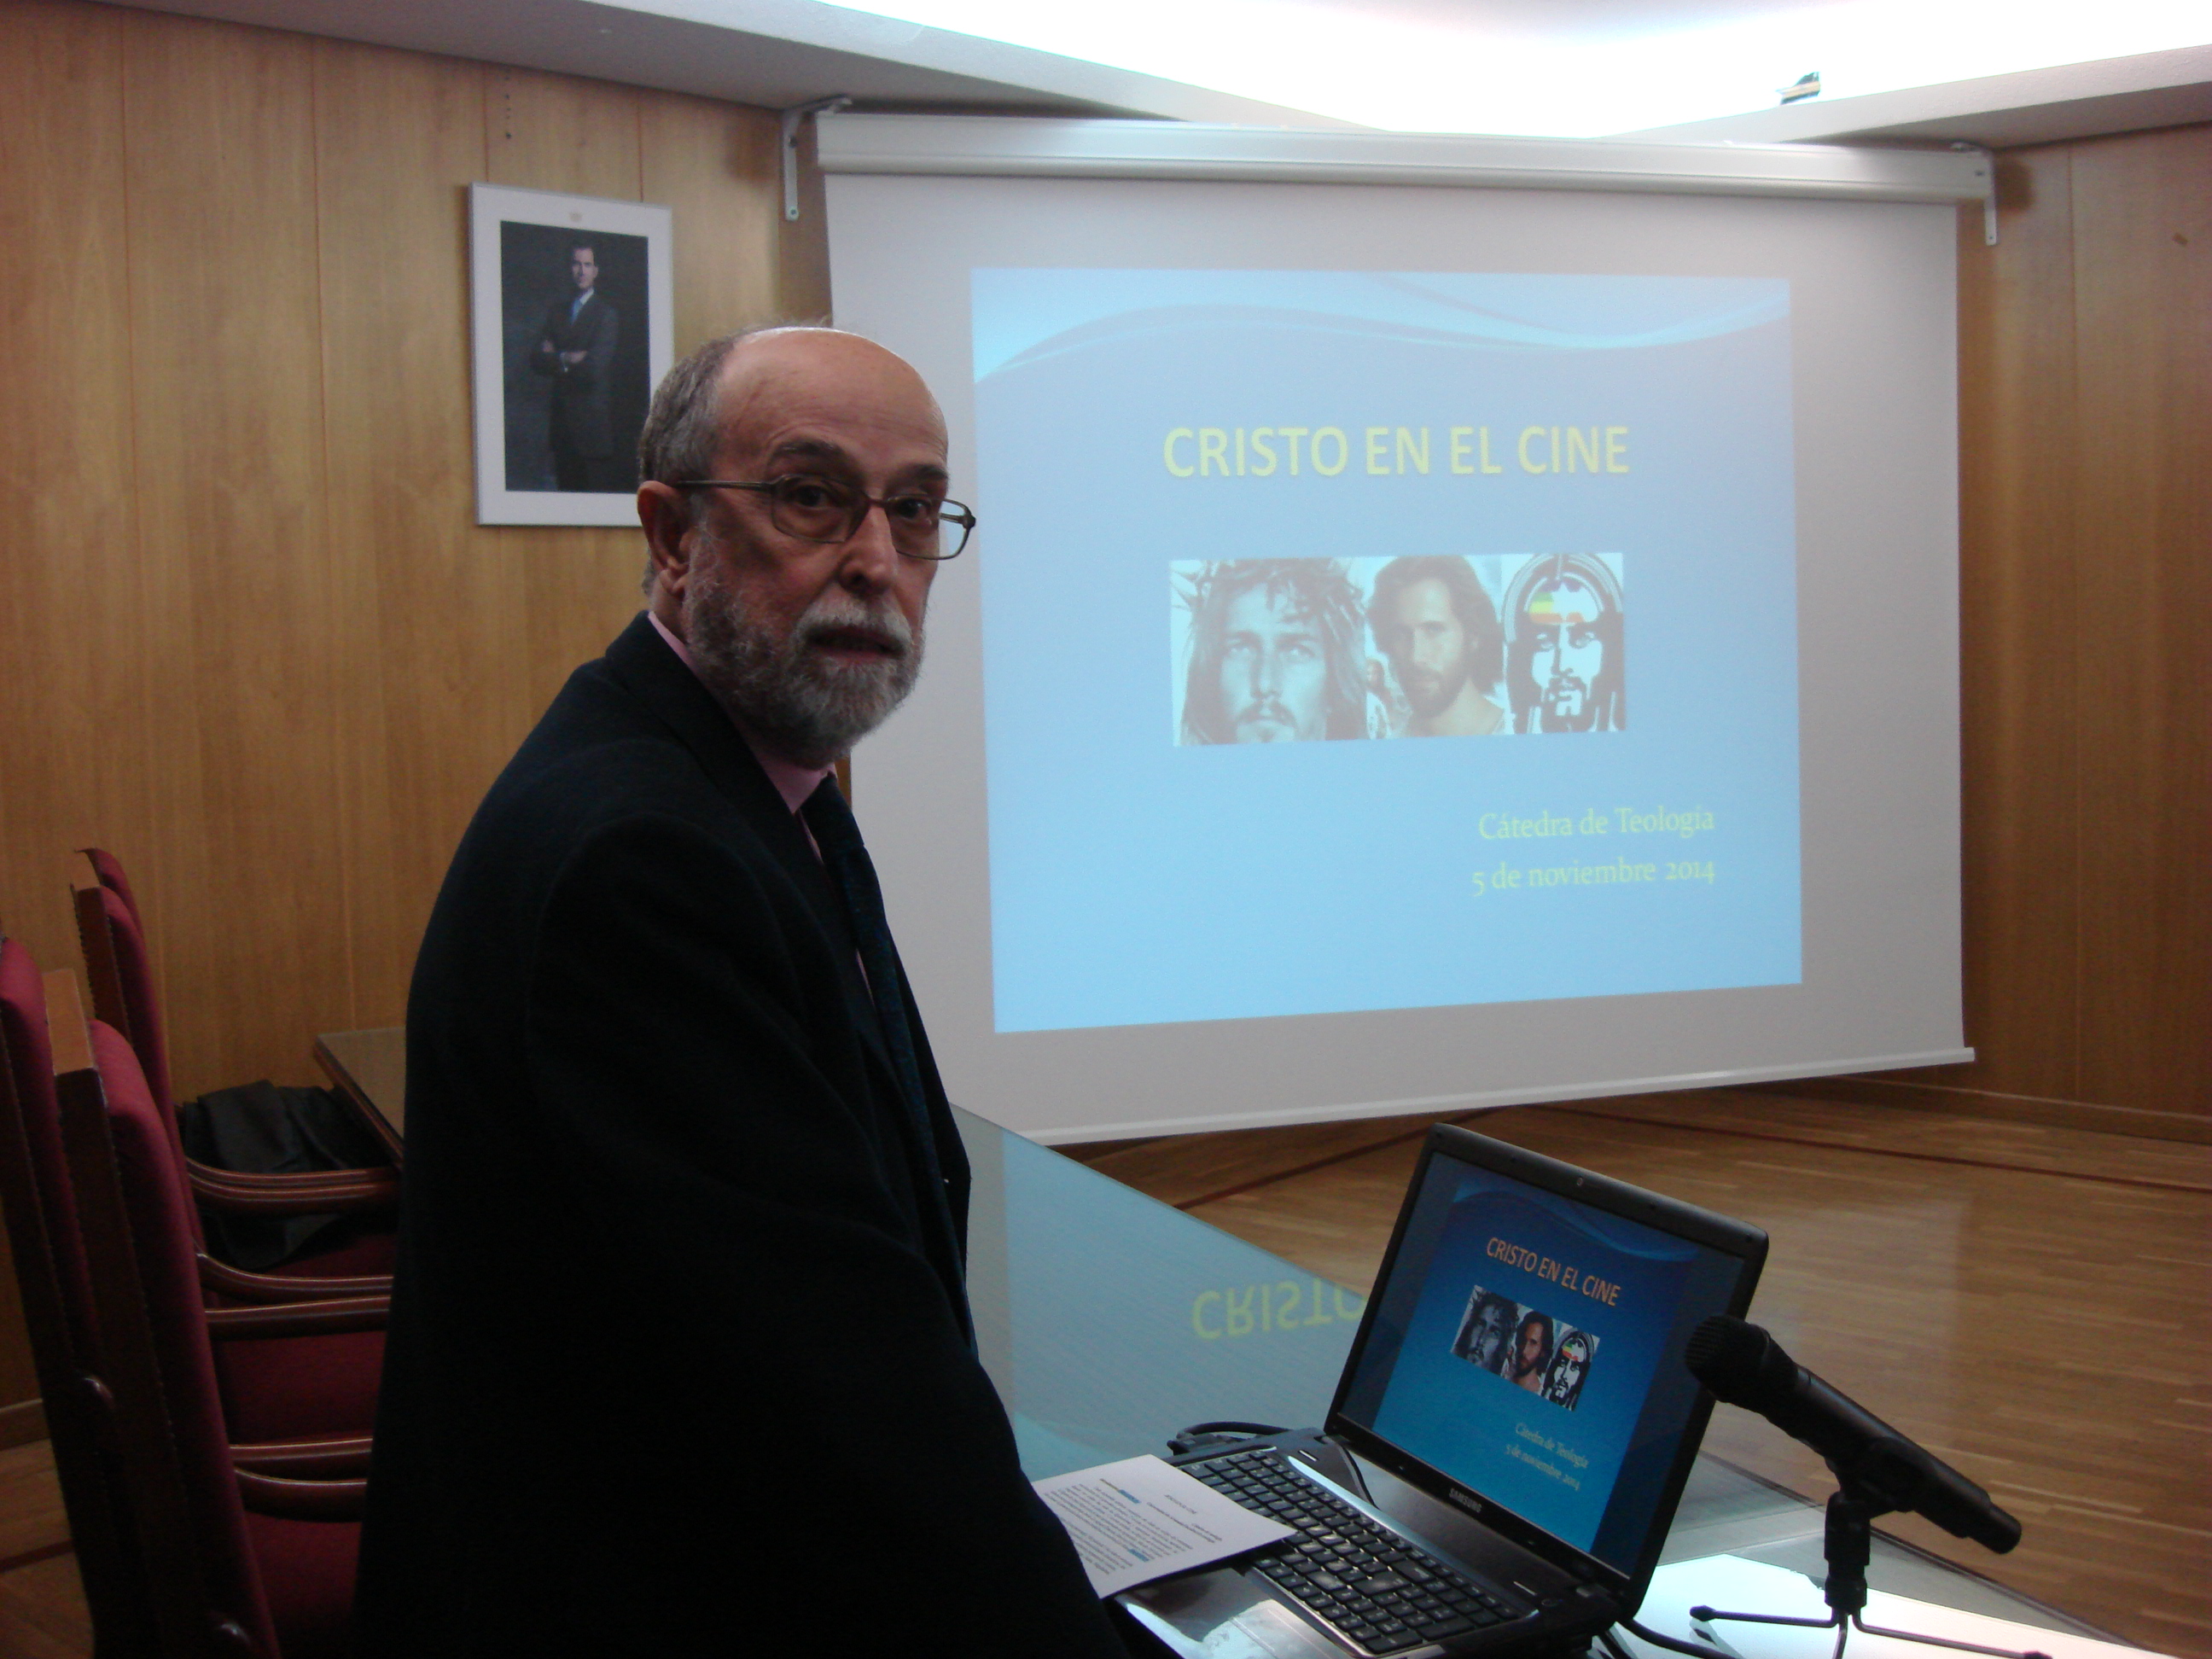 Imagen del ponente de la conferencia "Cristo en el cine"